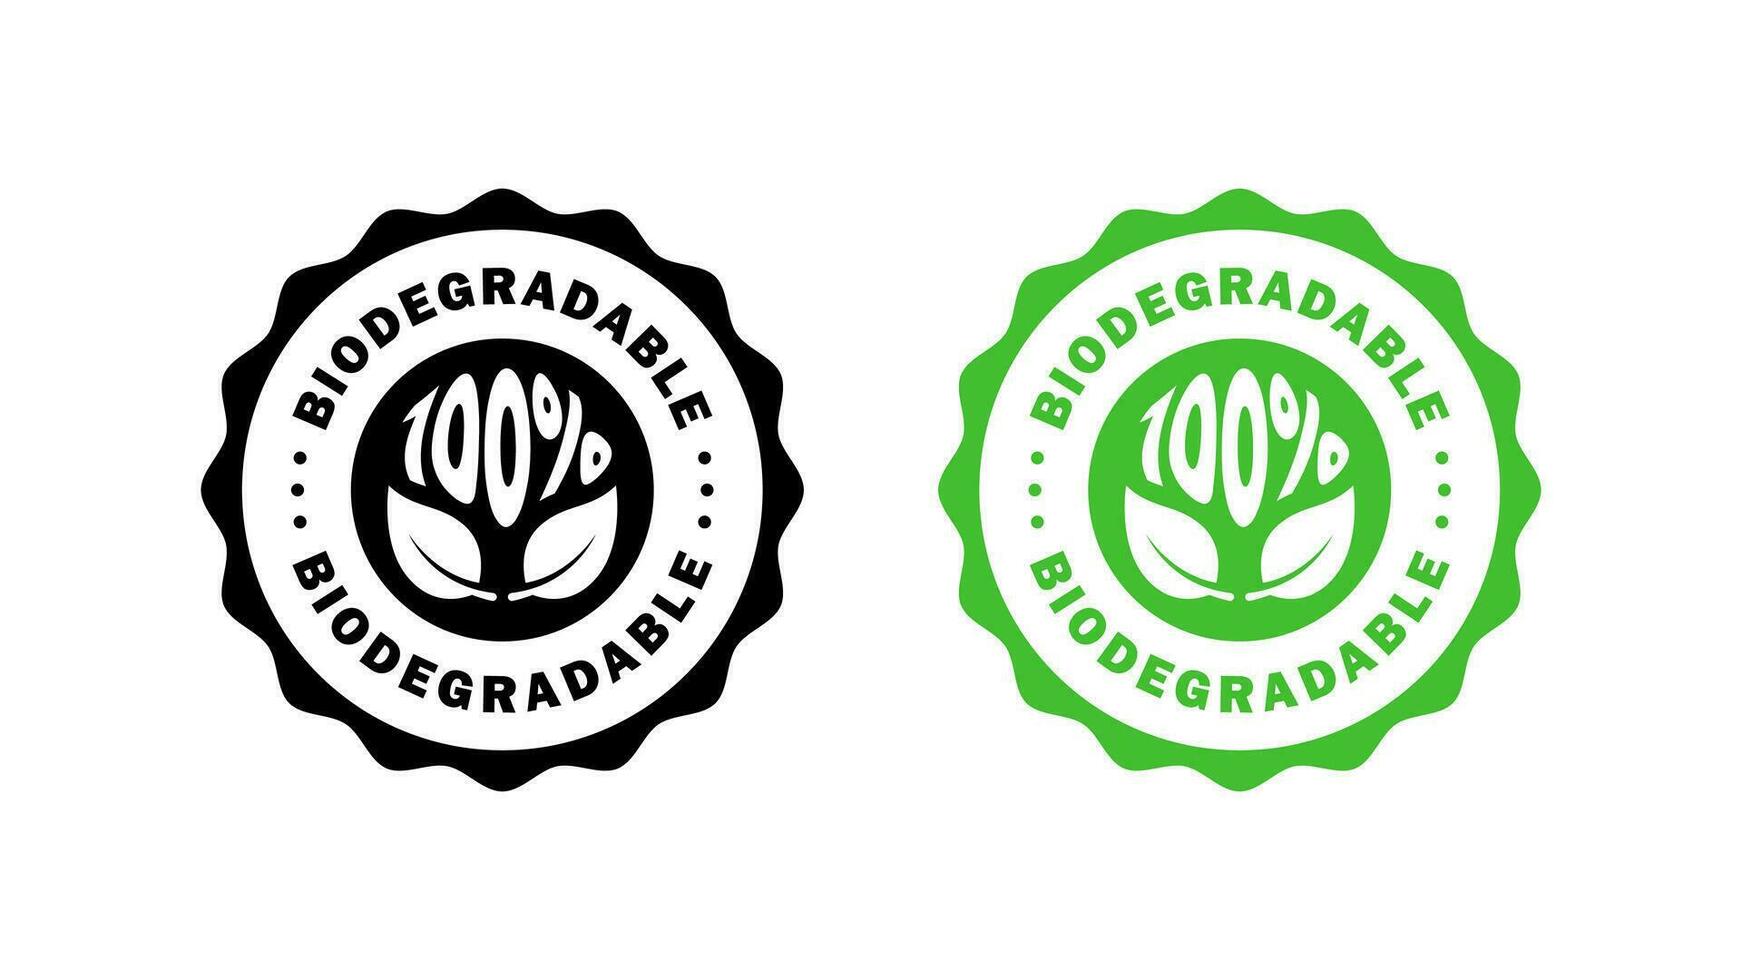 biodegradable insignias iconos ecológico sucesión iconos reciclable y degradable paquete estampilla. vector íconos